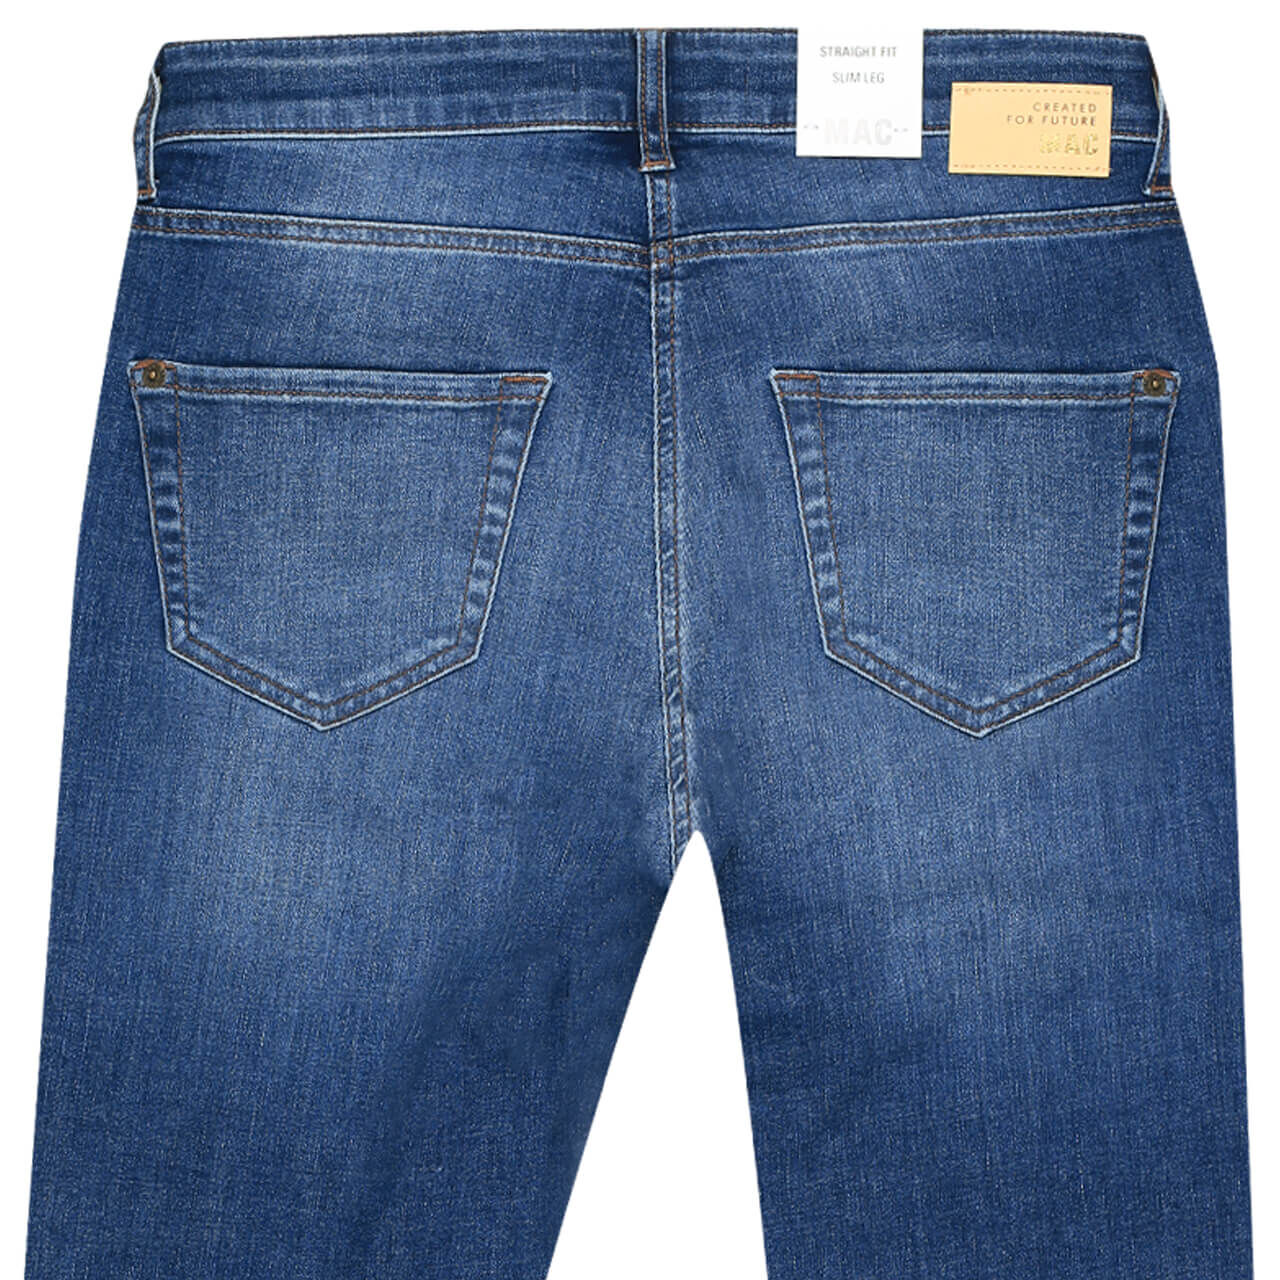 MAC Jeans Slim für Damen in Blau verwaschen, FarbNr.: D577